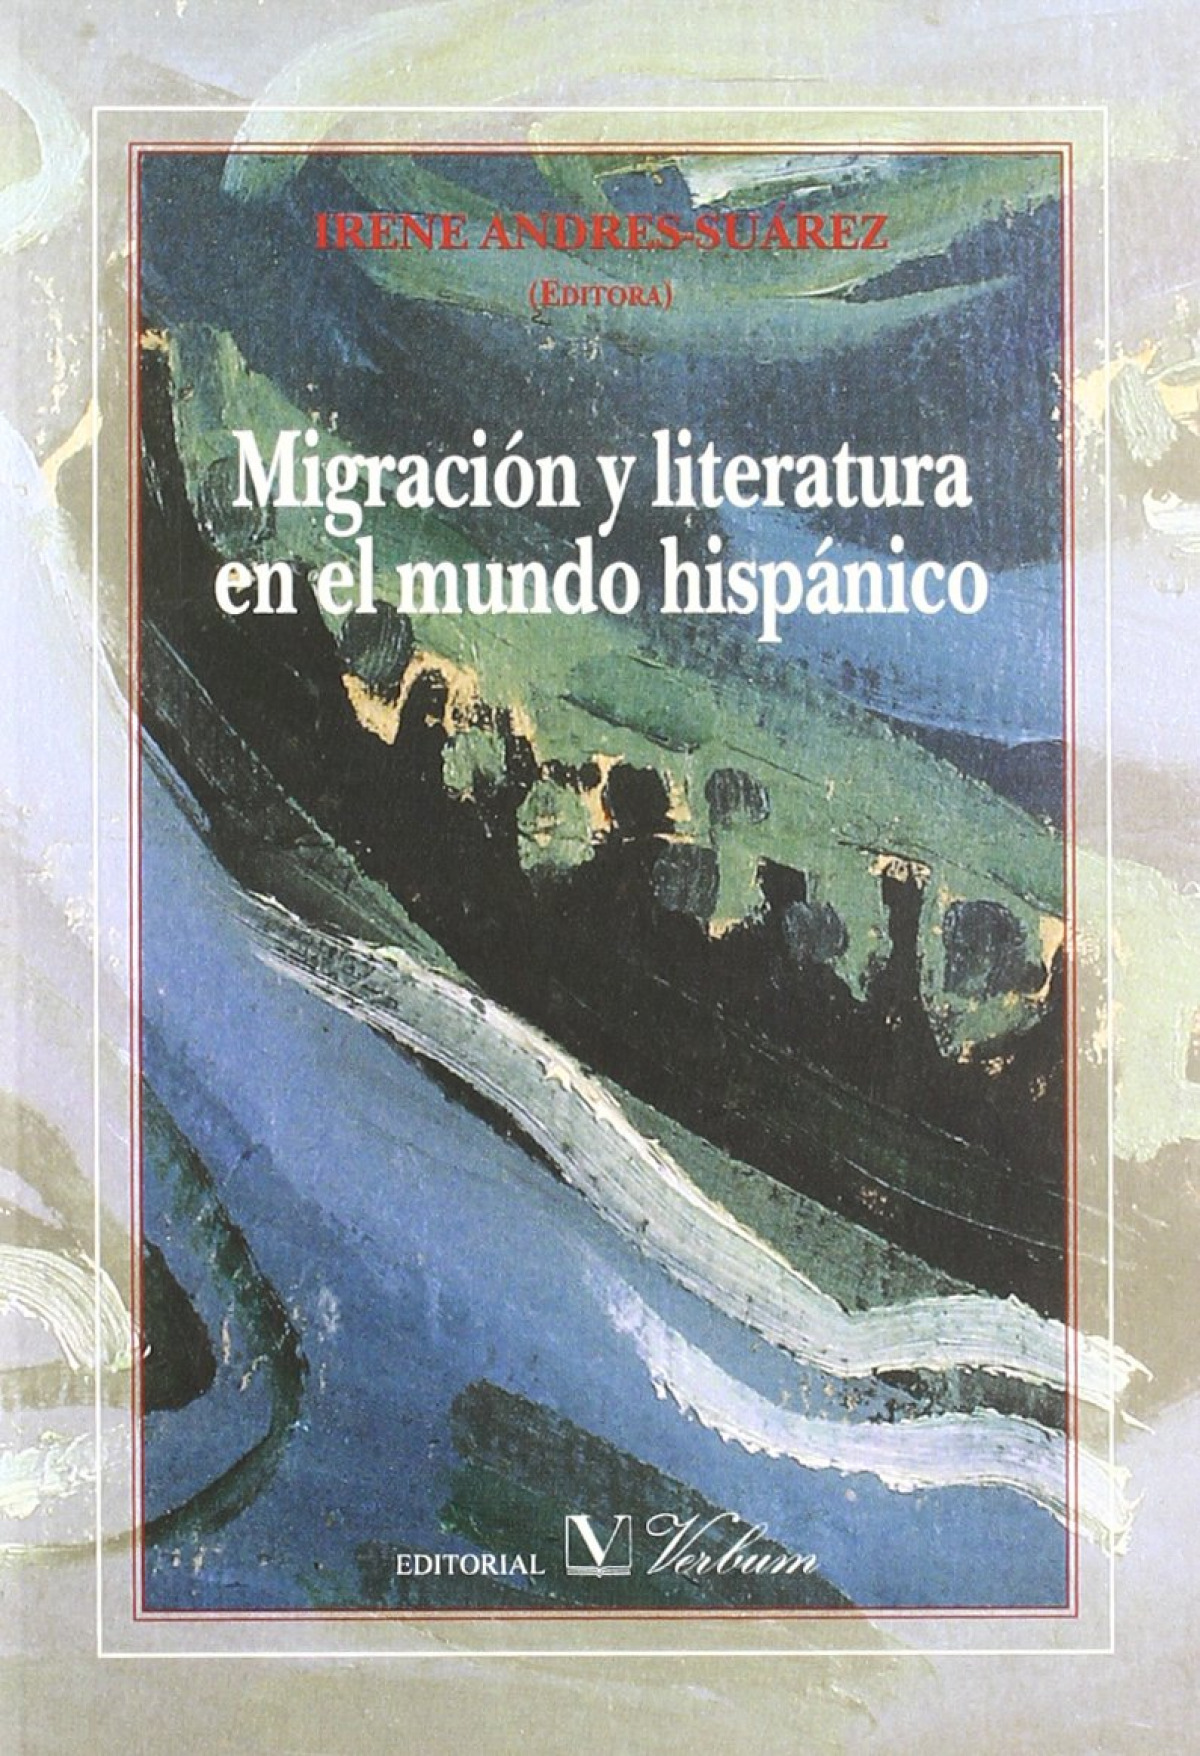 Migración y literatura en el mundo hispánico - Andres-Suárez, Irene (edit.)